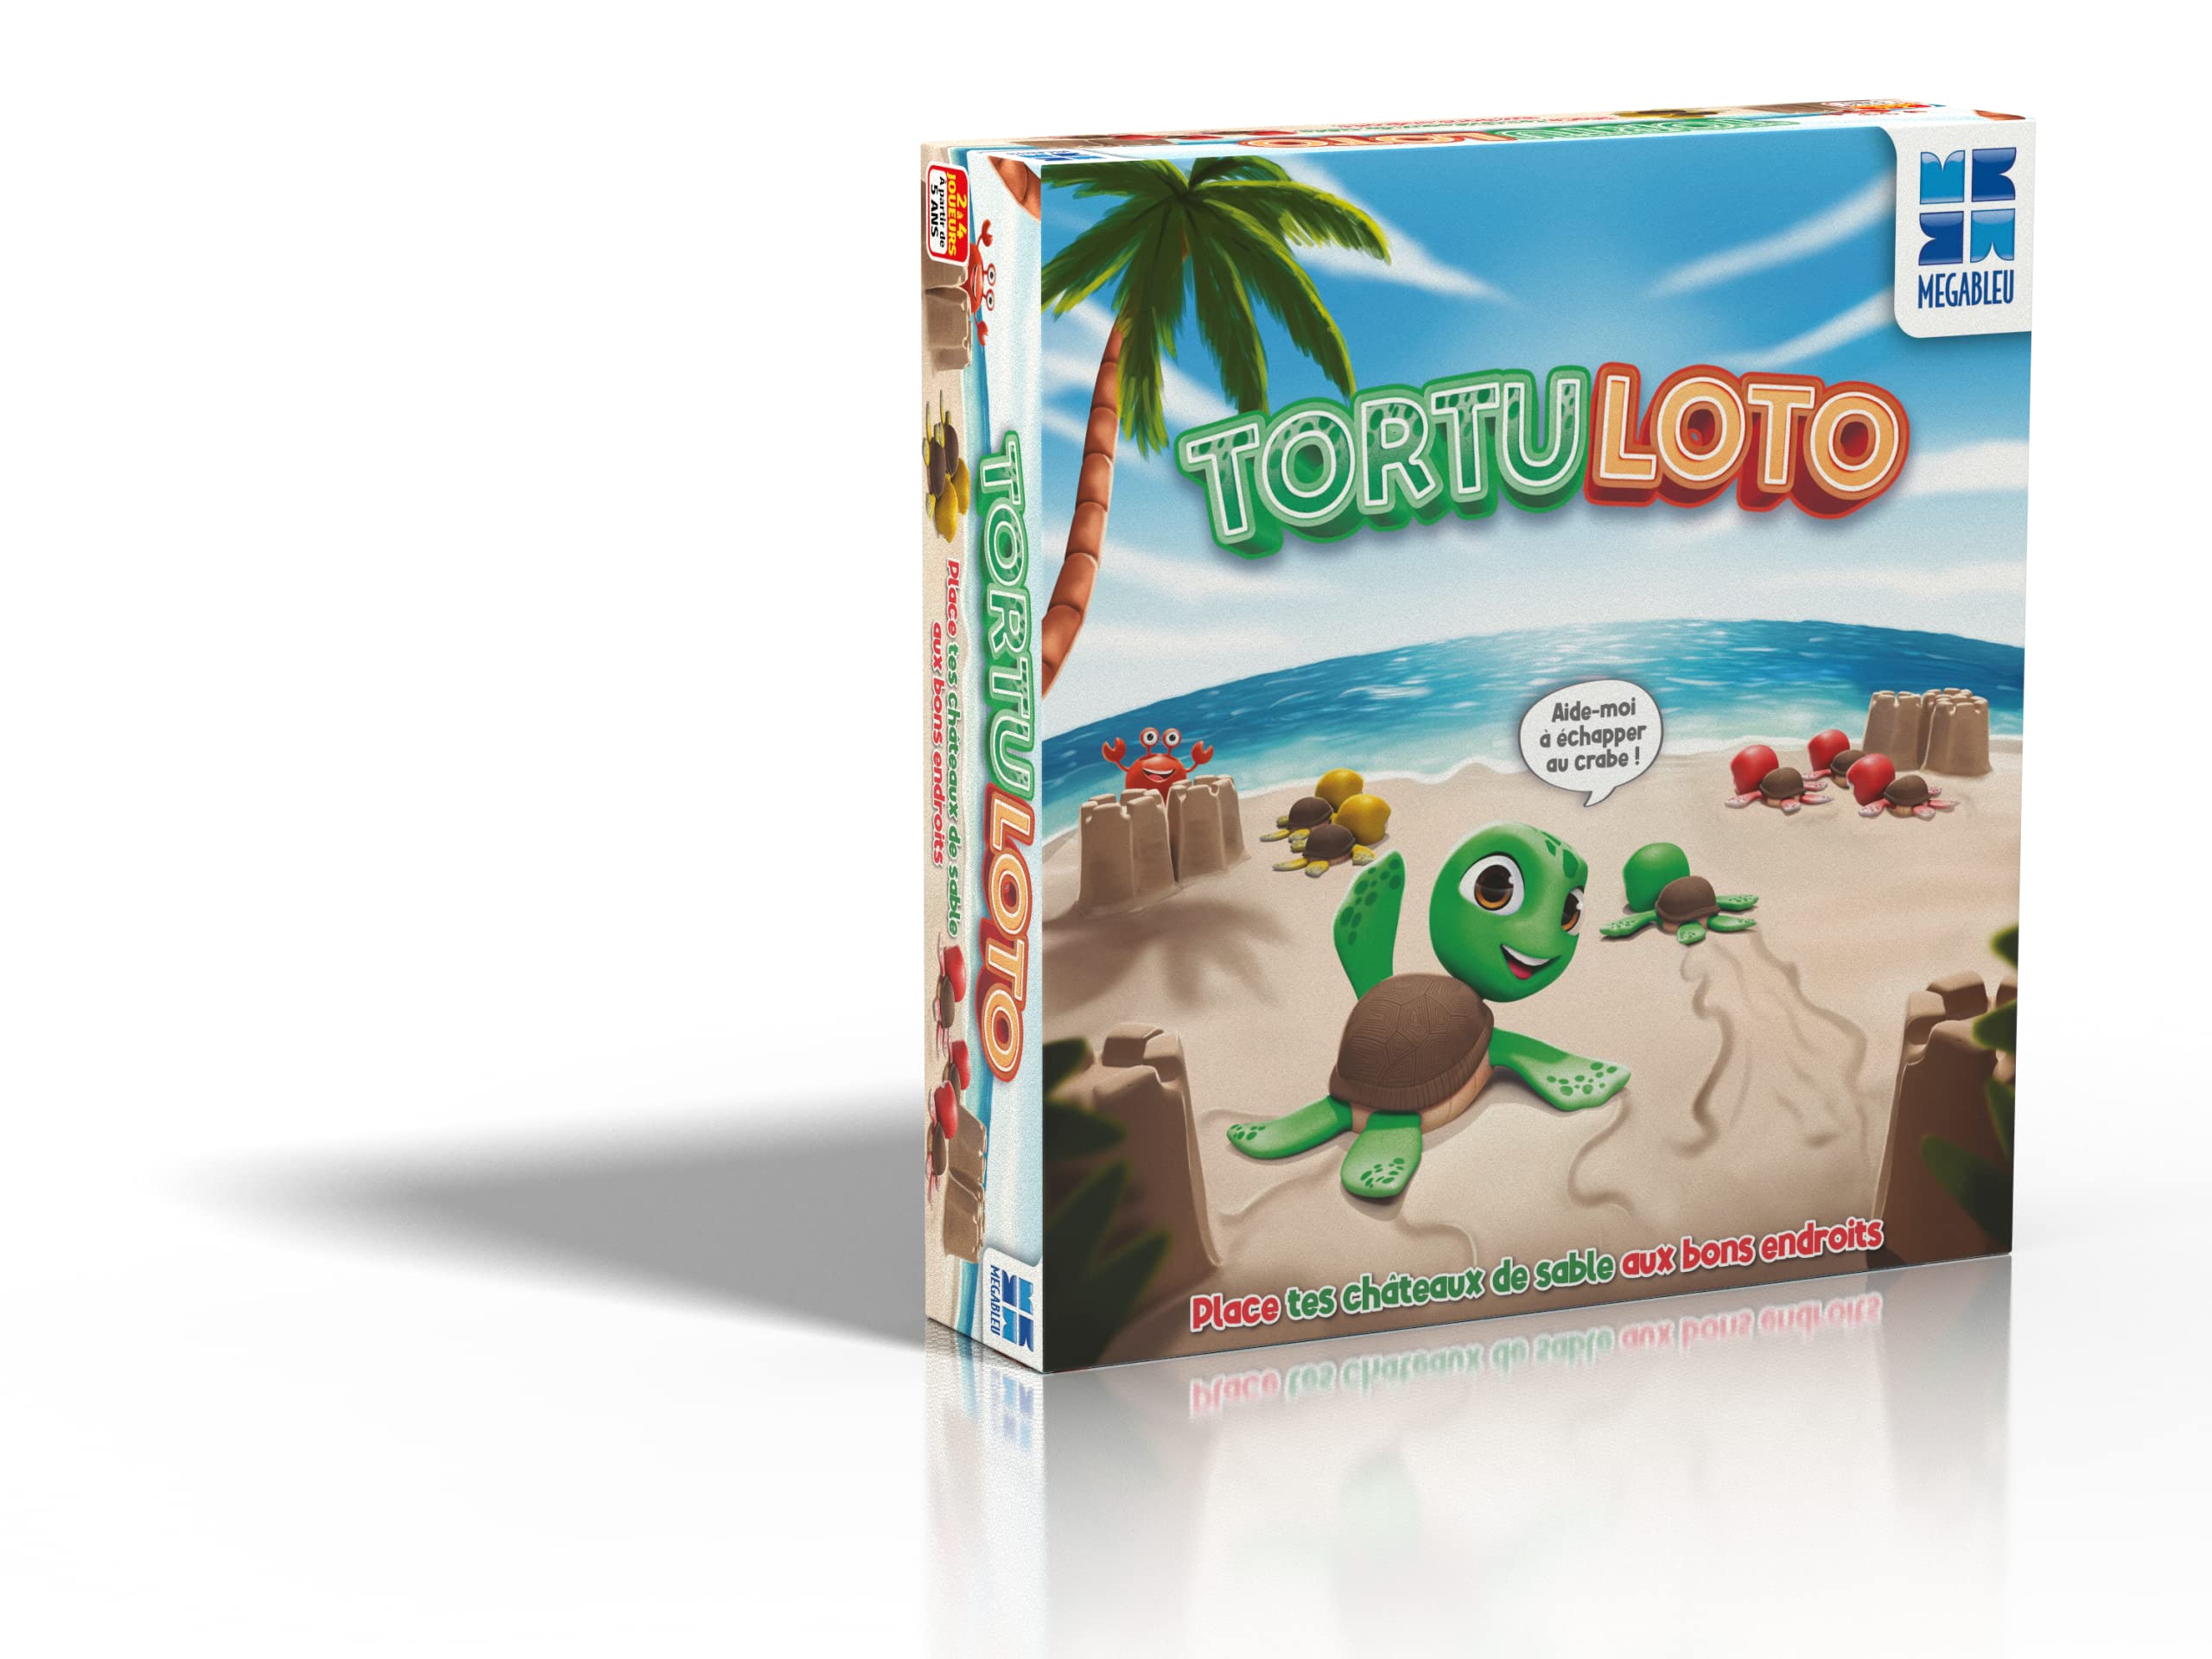 Megableu 678 106 Tortuloto - Gesellschaftsspiel, Lotospiel für die Jüngsten mit Strandzeichnungen